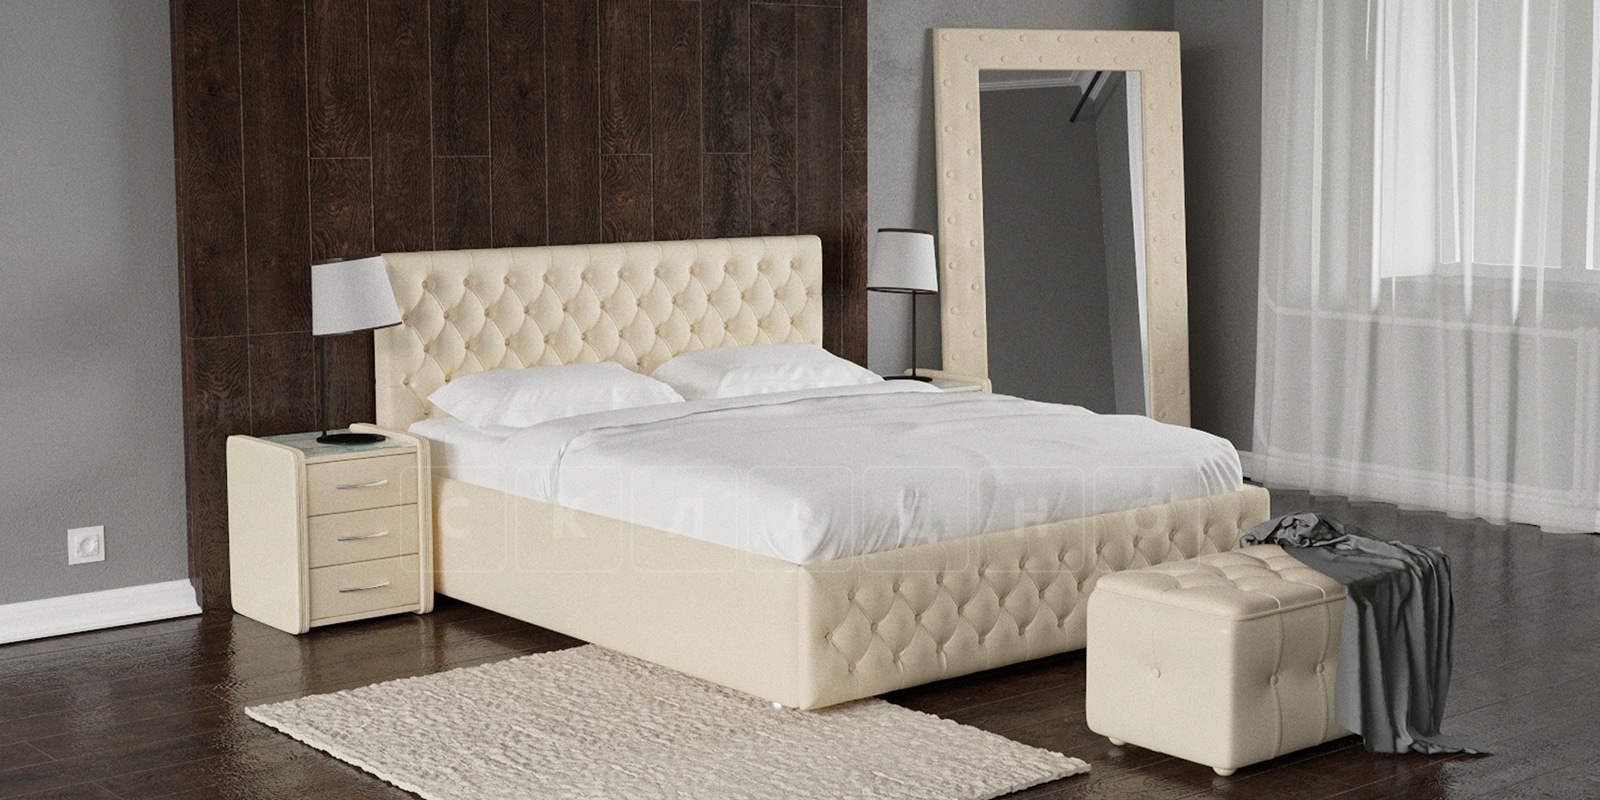 Мягкая кровать Малибу 160см экокожа бежевого цвета вариант 4 фото 1 | интернет-магазин Складно